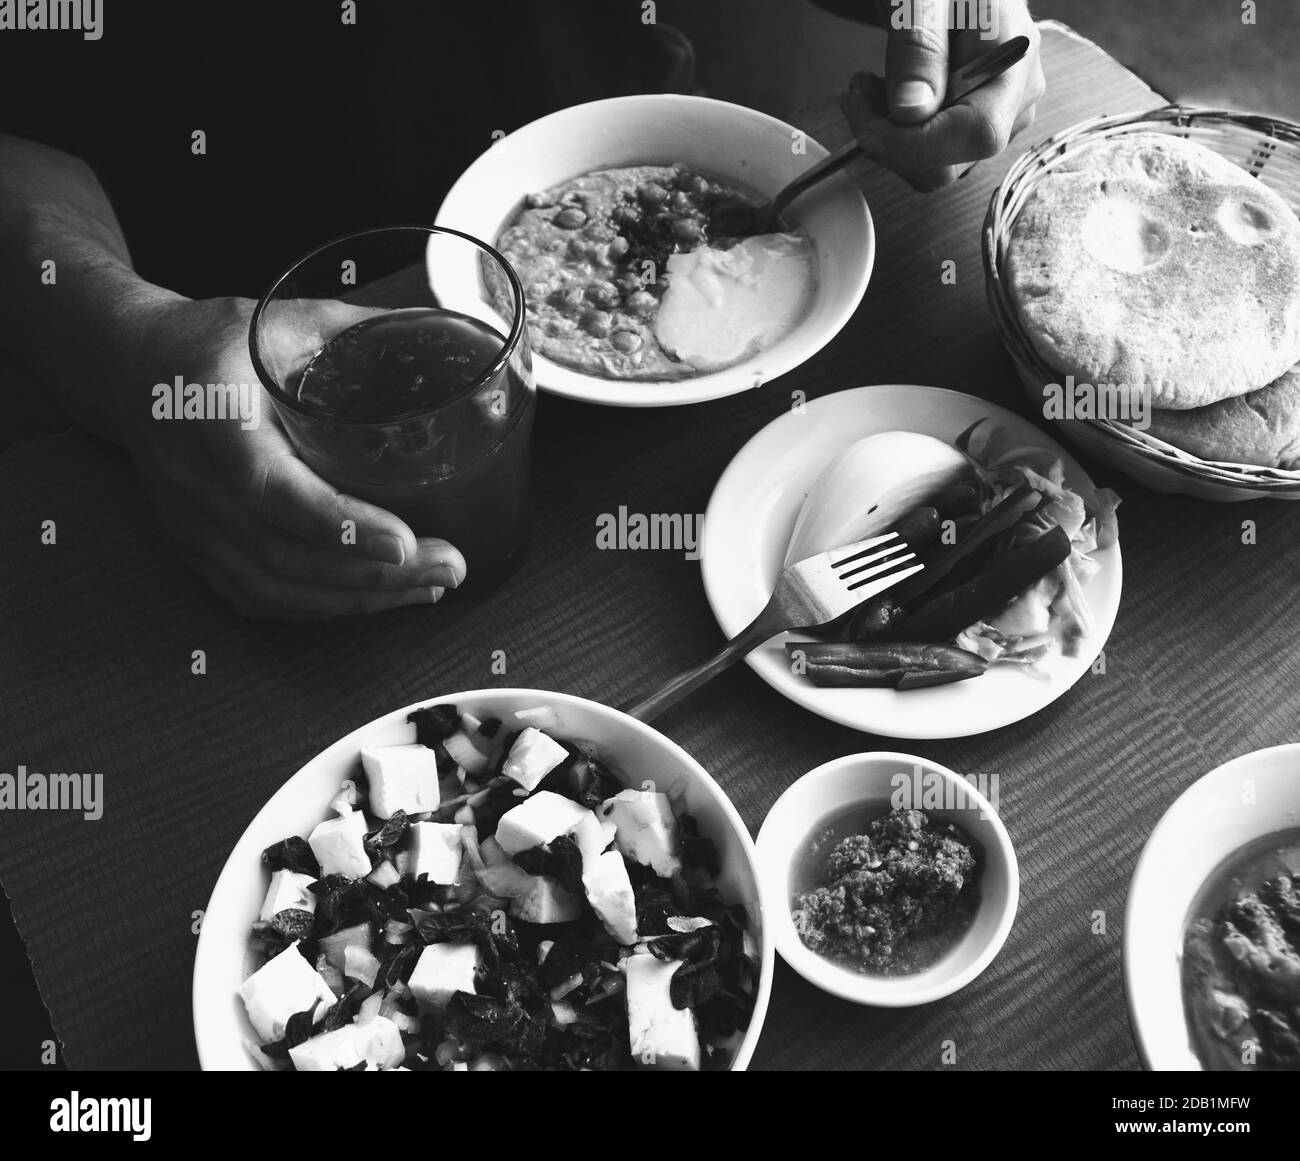 Arbeiter Mittagspause in einfachen Diner. Mann isst frischen warmen Hummus mit Pita Brot, Gurken, Feta-Käse-Salat und trinken frischen Saft. Gesunde Ernährung. Stockfoto